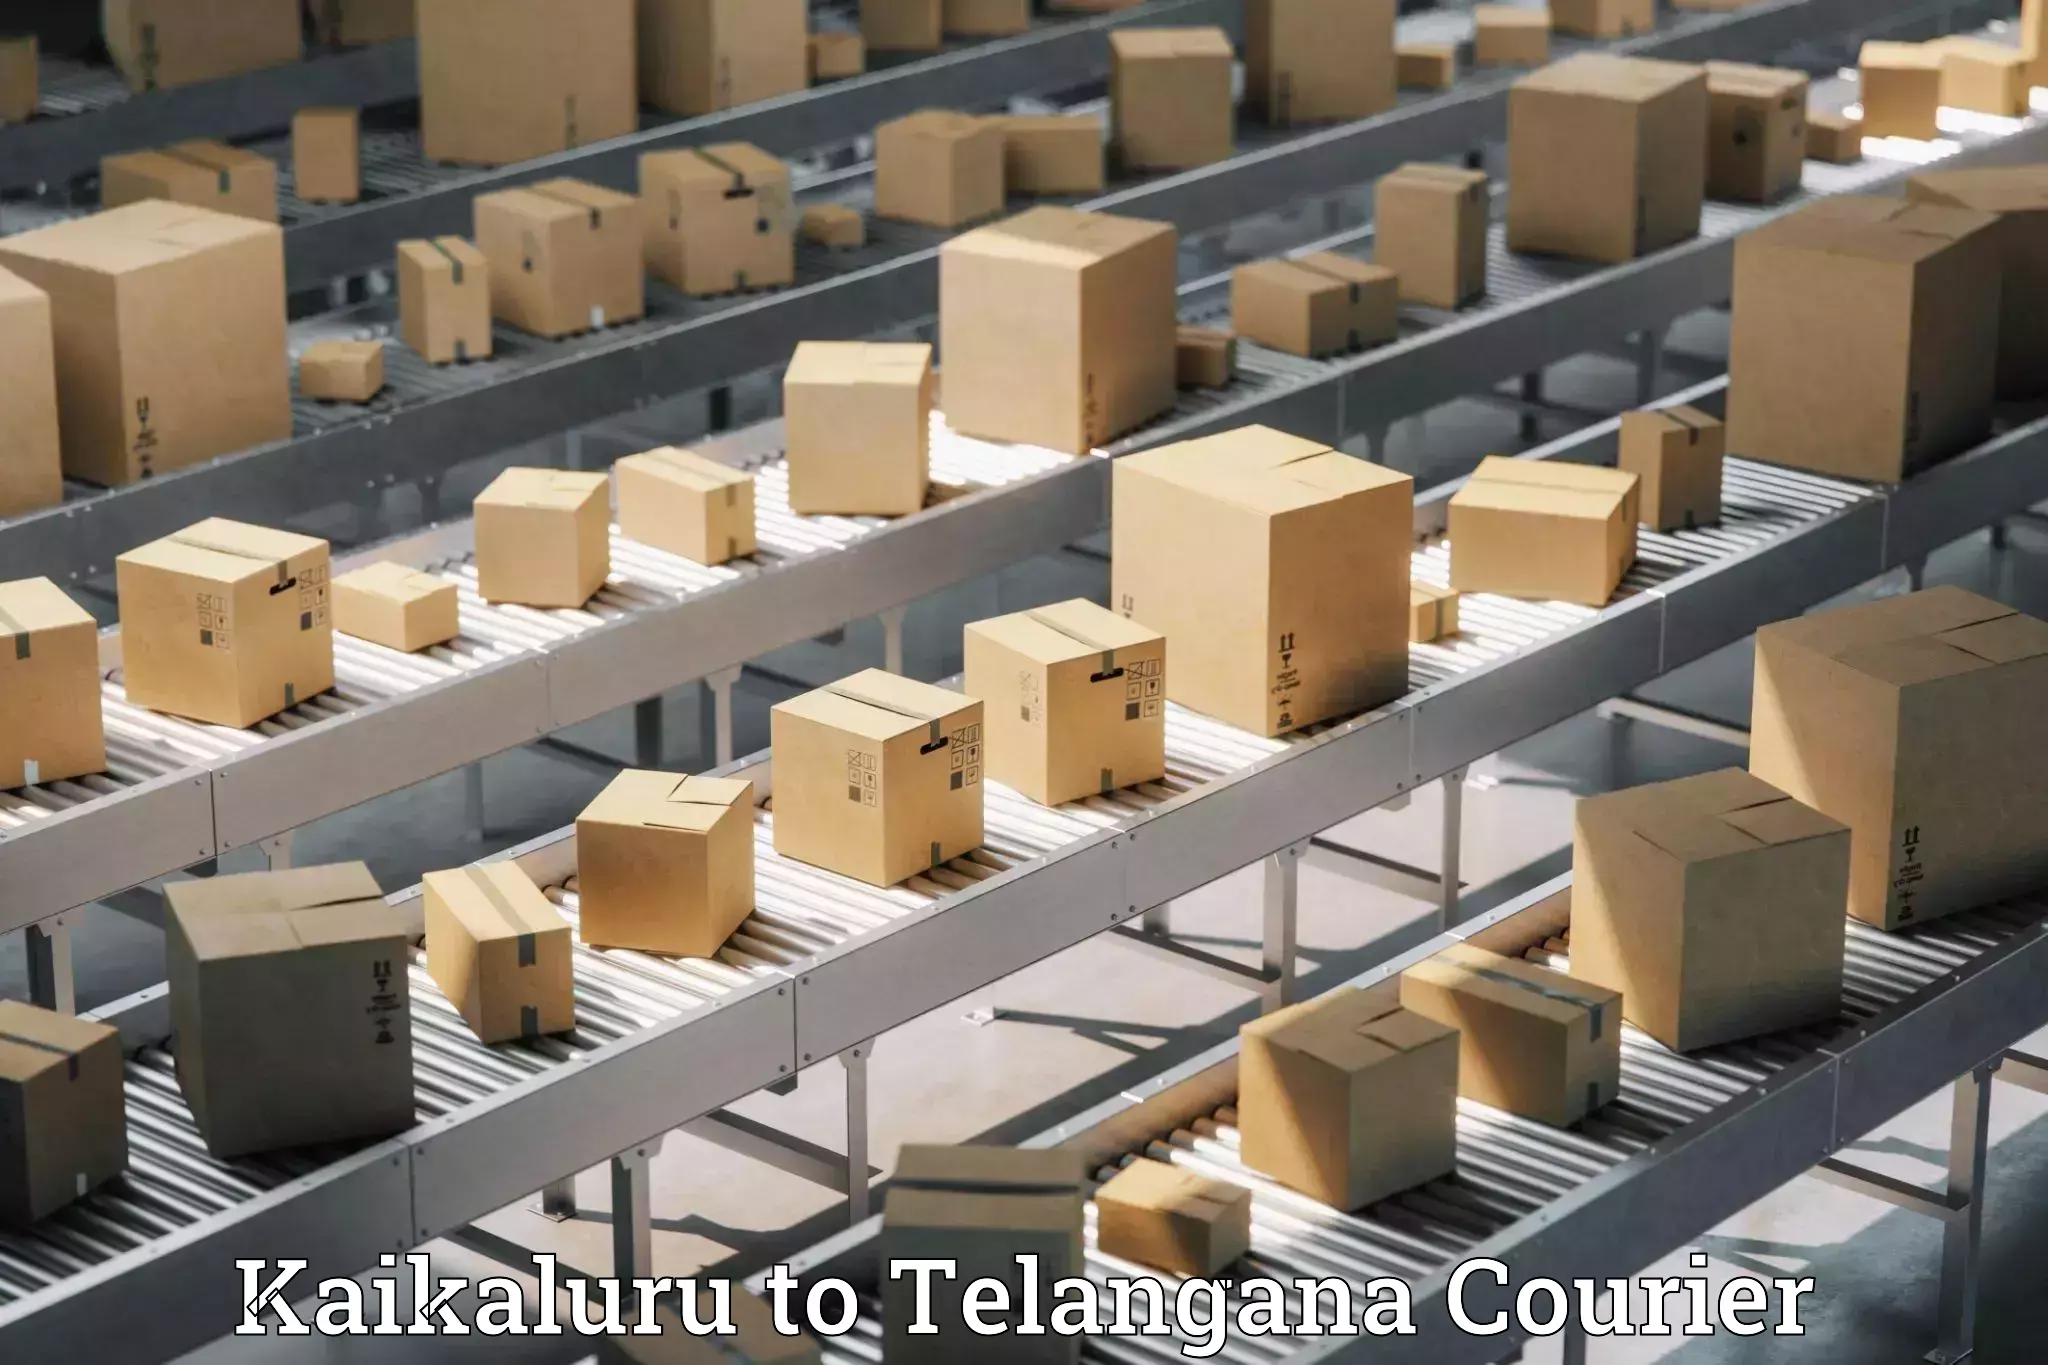 High-speed parcel service Kaikaluru to Madgulapally